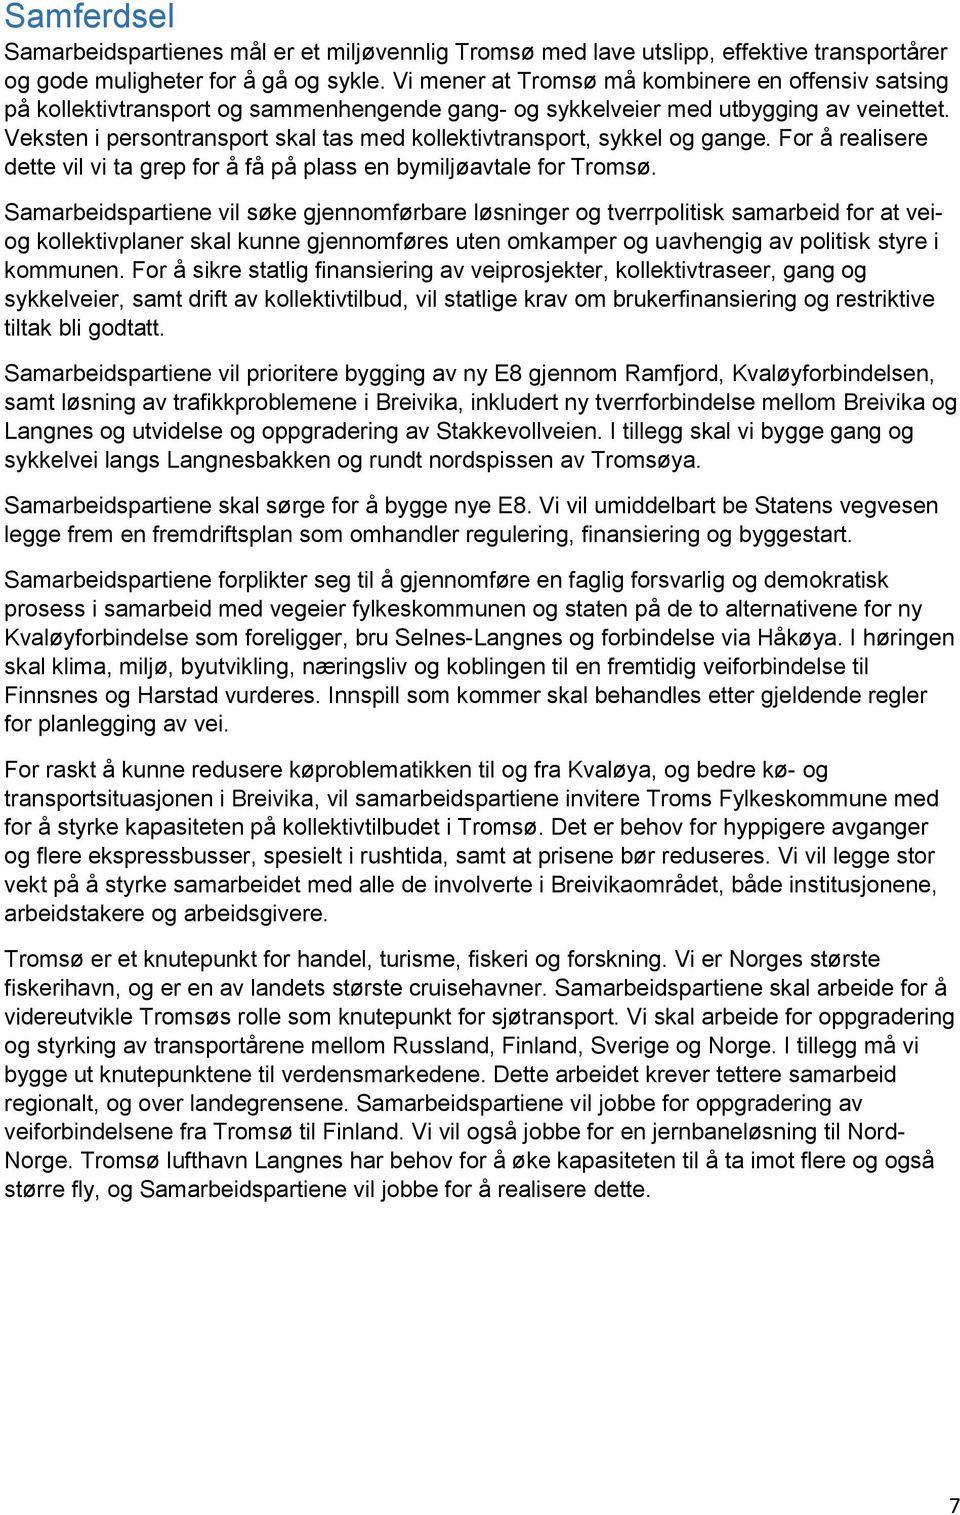 Veksten i persontransport skal tas med kollektivtransport, sykkel og gange. For å realisere dette vil vi ta grep for å få på plass en bymiljøavtale for Tromsø.